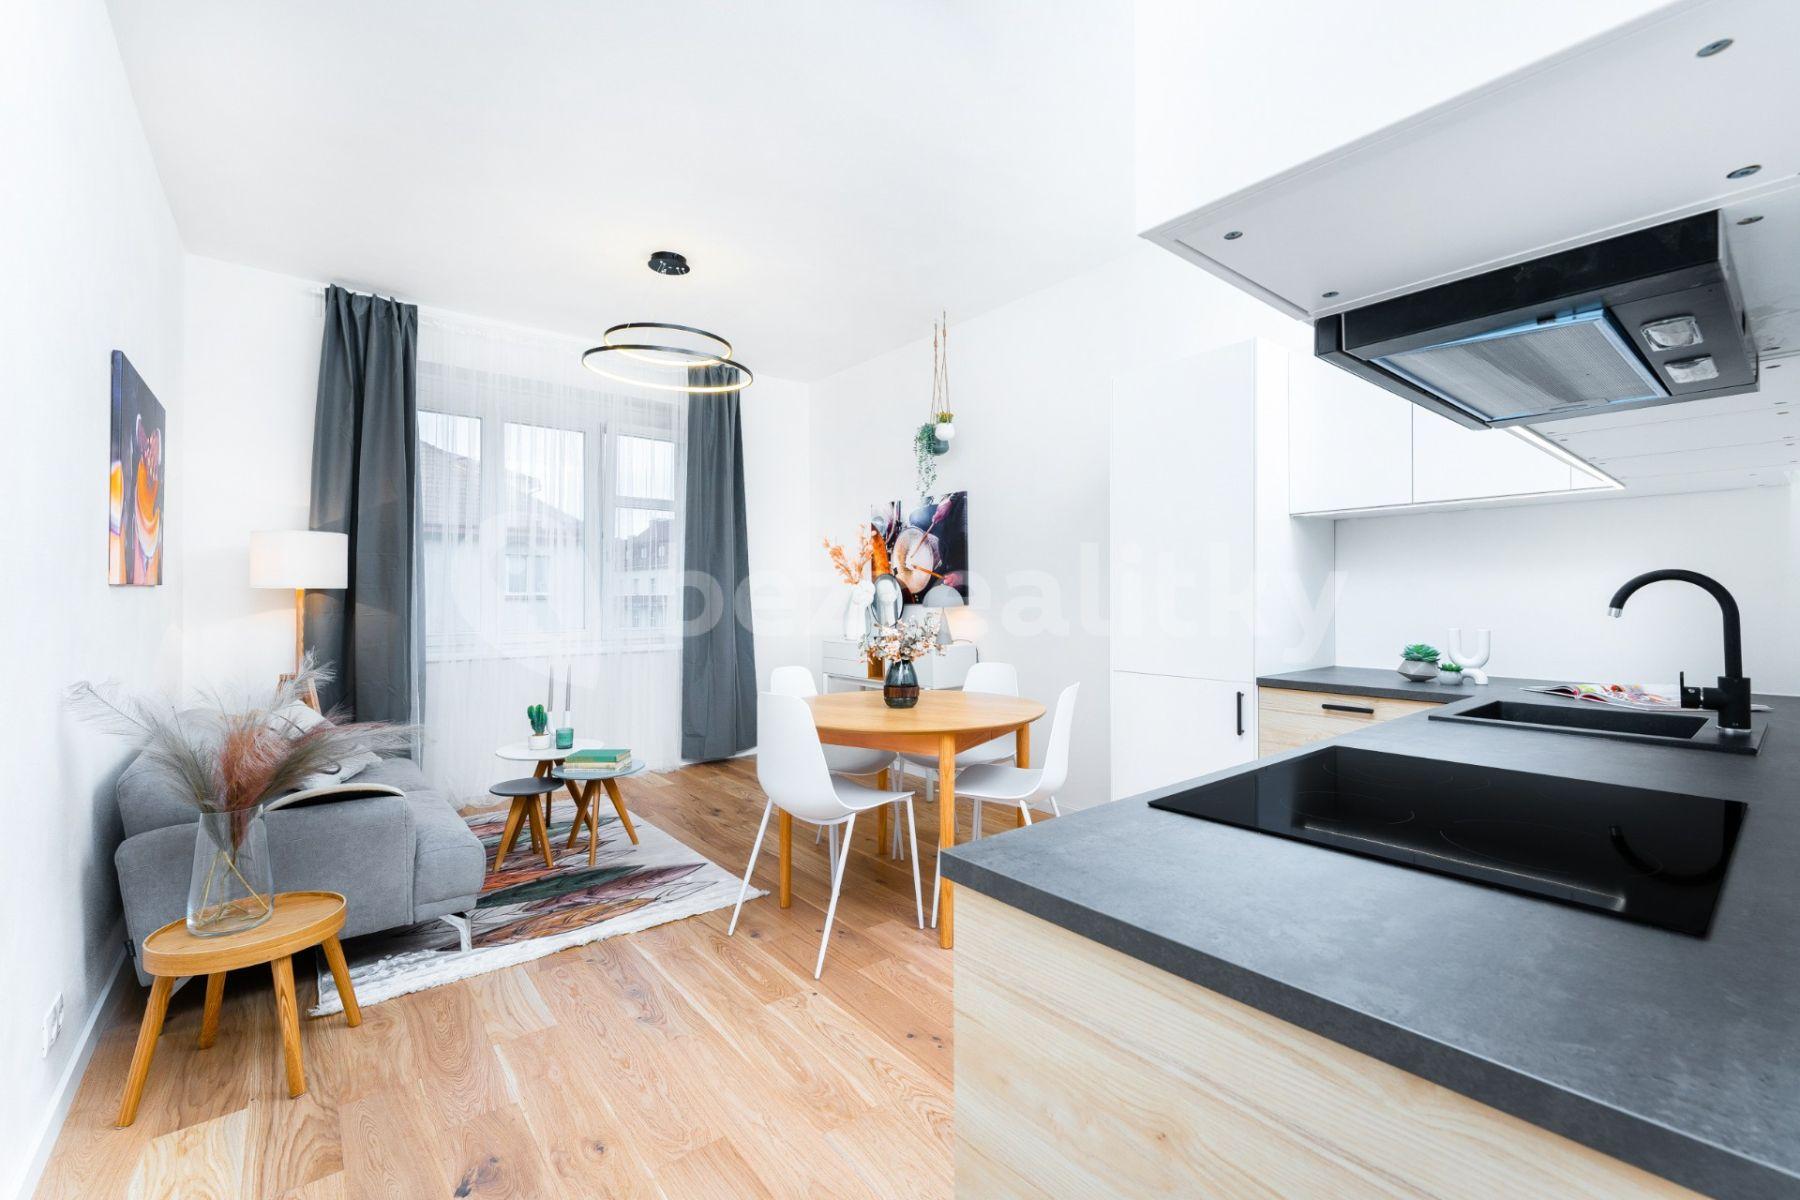 1 bedroom with open-plan kitchen flat for sale, 52 m², Přístavní, Prague, Prague